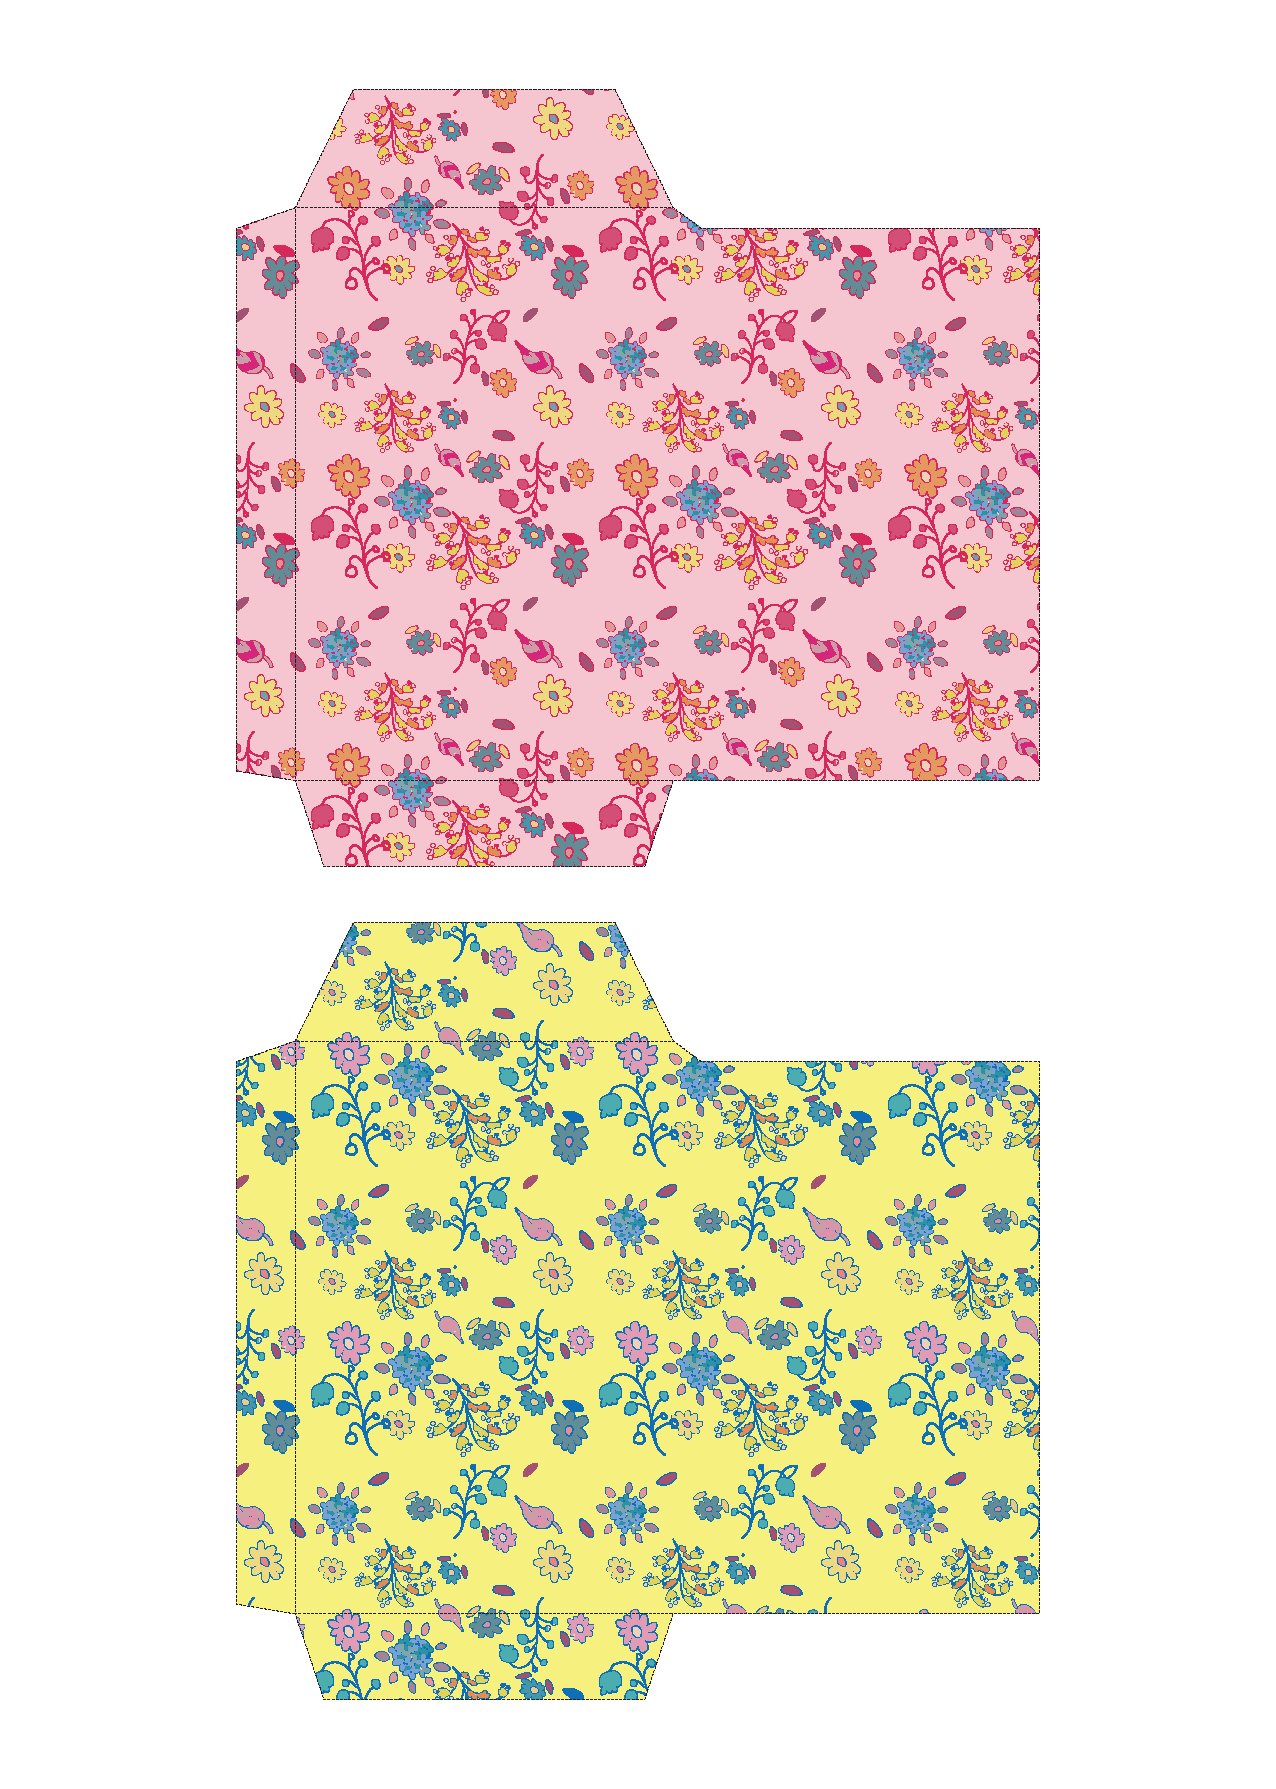 ポチ袋 お年玉袋 のテンプレート 花柄 ピンク 緑 イラスト 商用フリー 無料 のイラスト素材なら イラストマンション